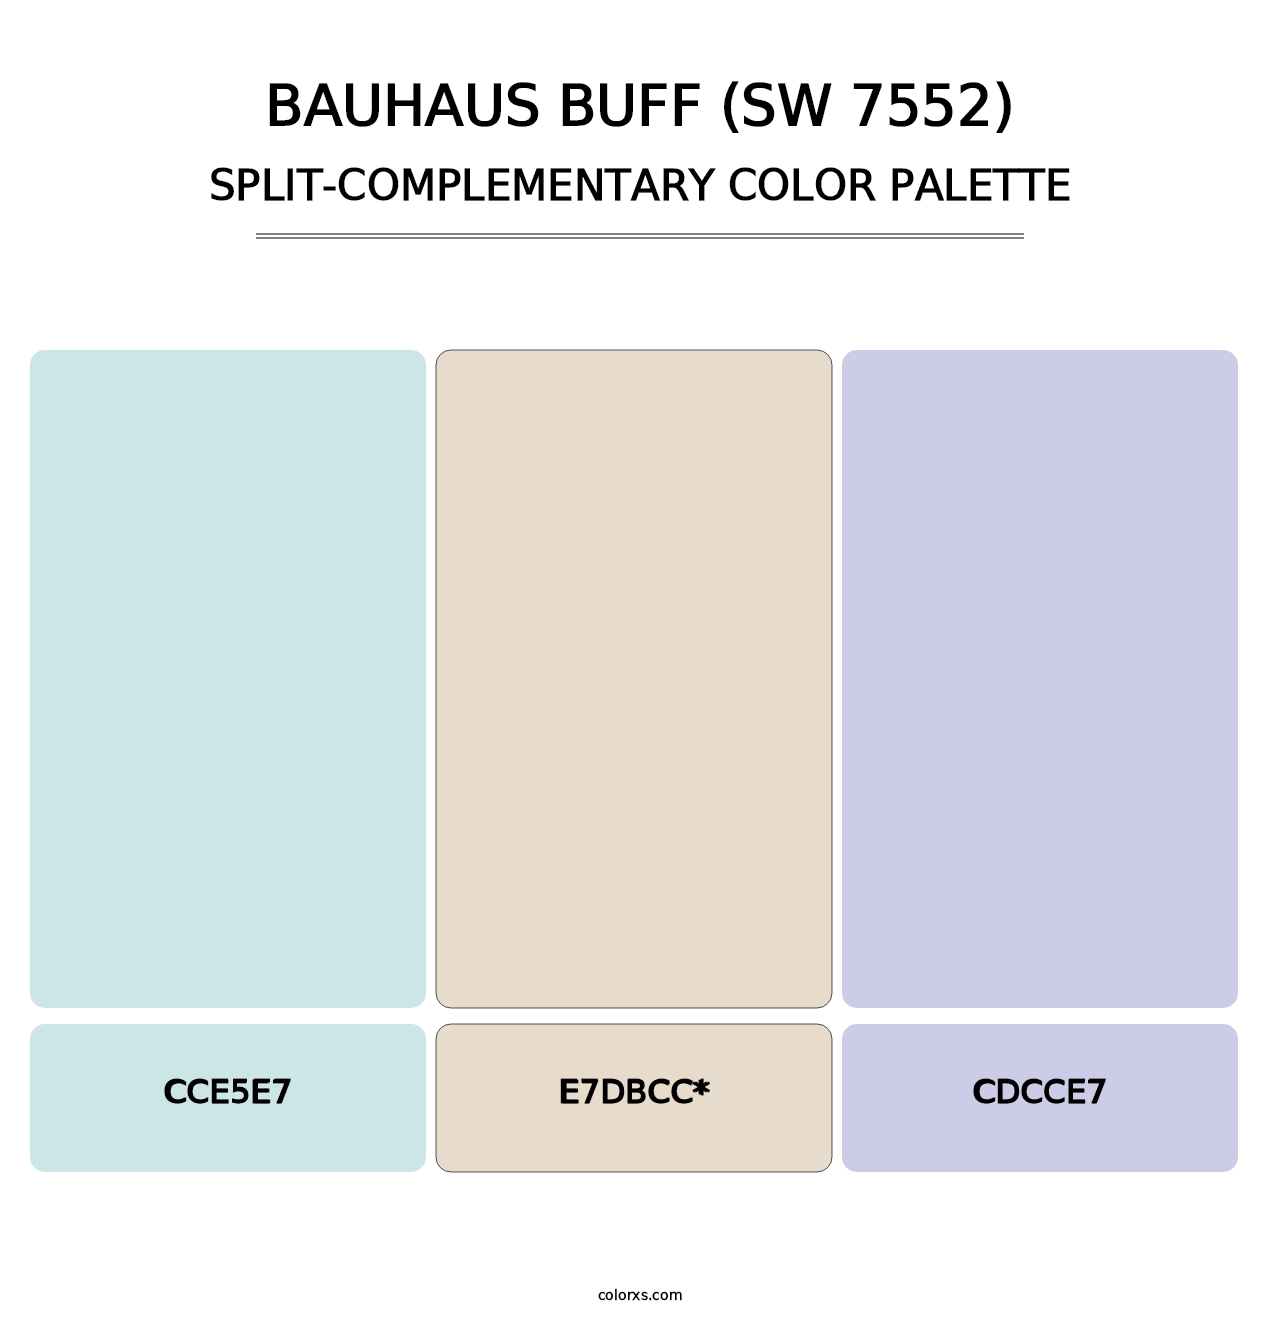 Bauhaus Buff (SW 7552) - Split-Complementary Color Palette